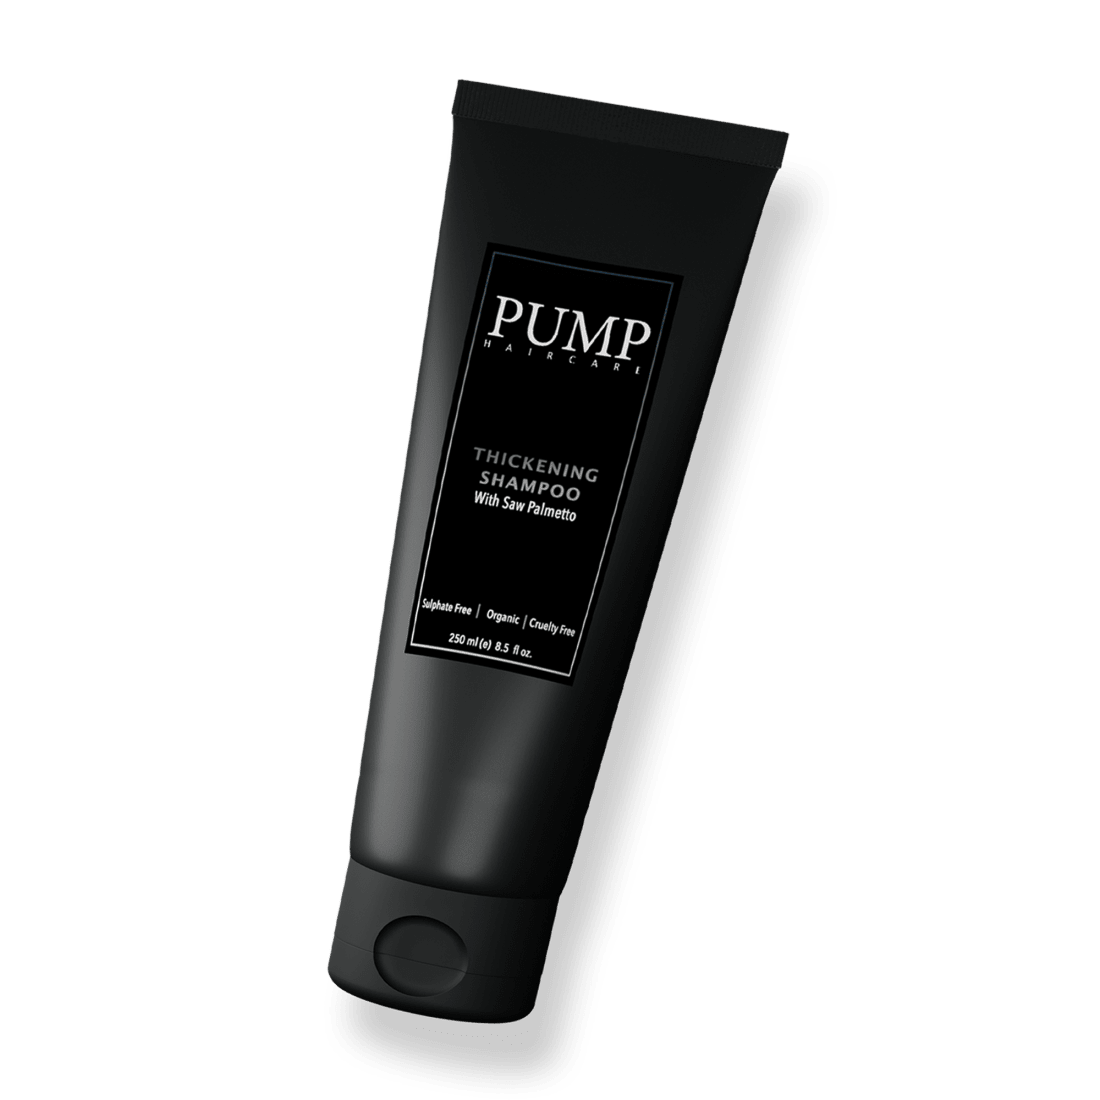 Pump Haircare Thickening Shampoo 250ml